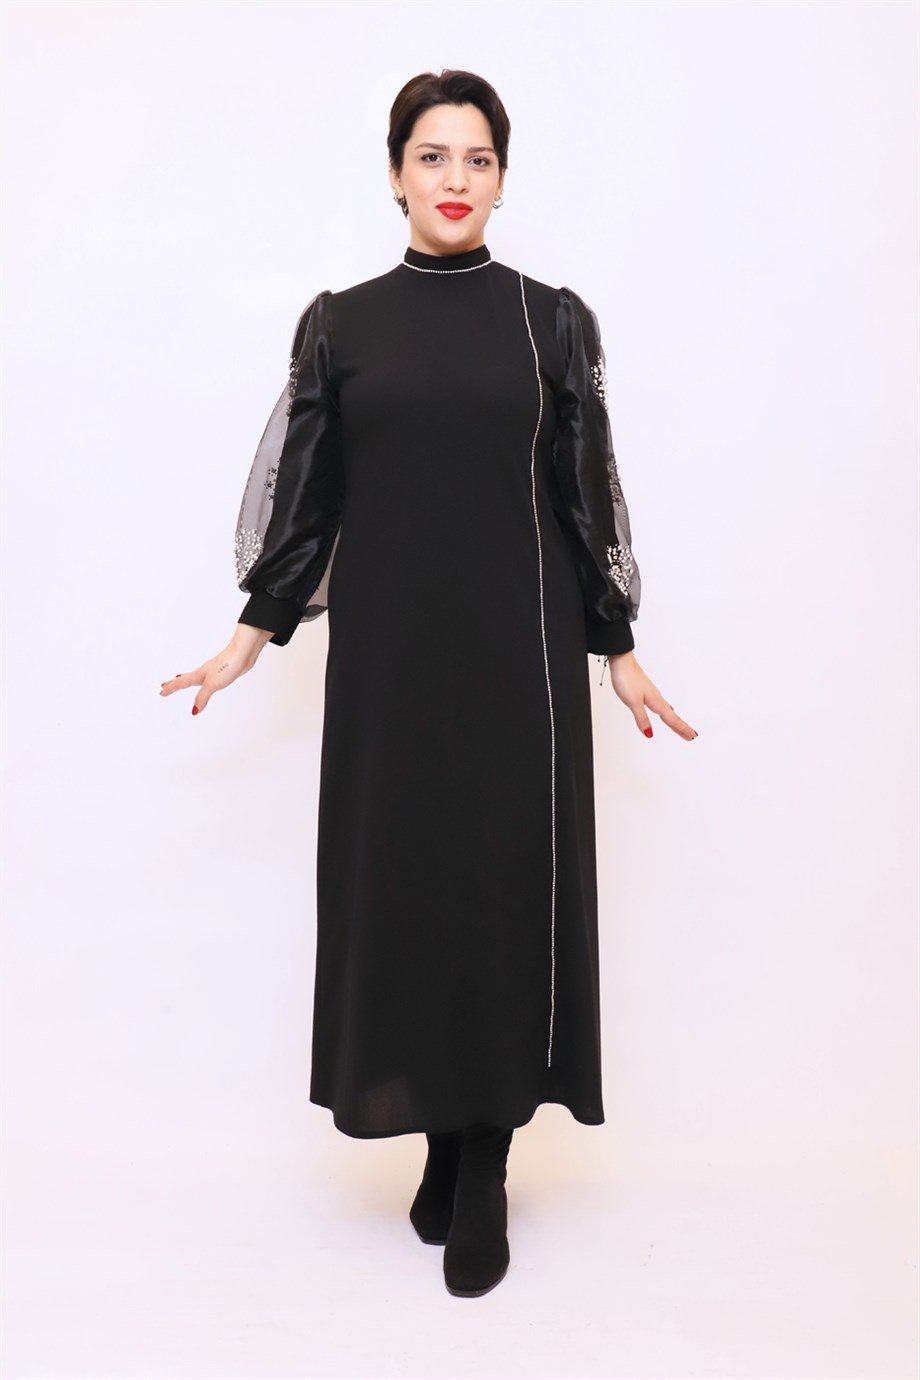 Büyük Beden Pırlanta Elbise Siyah | Bedrinxxl | Büyük Beden Abiye Elbise,  Tunik, Genç Buyuk Beden Elbise Tesettür Modelleri ve Fiyatları